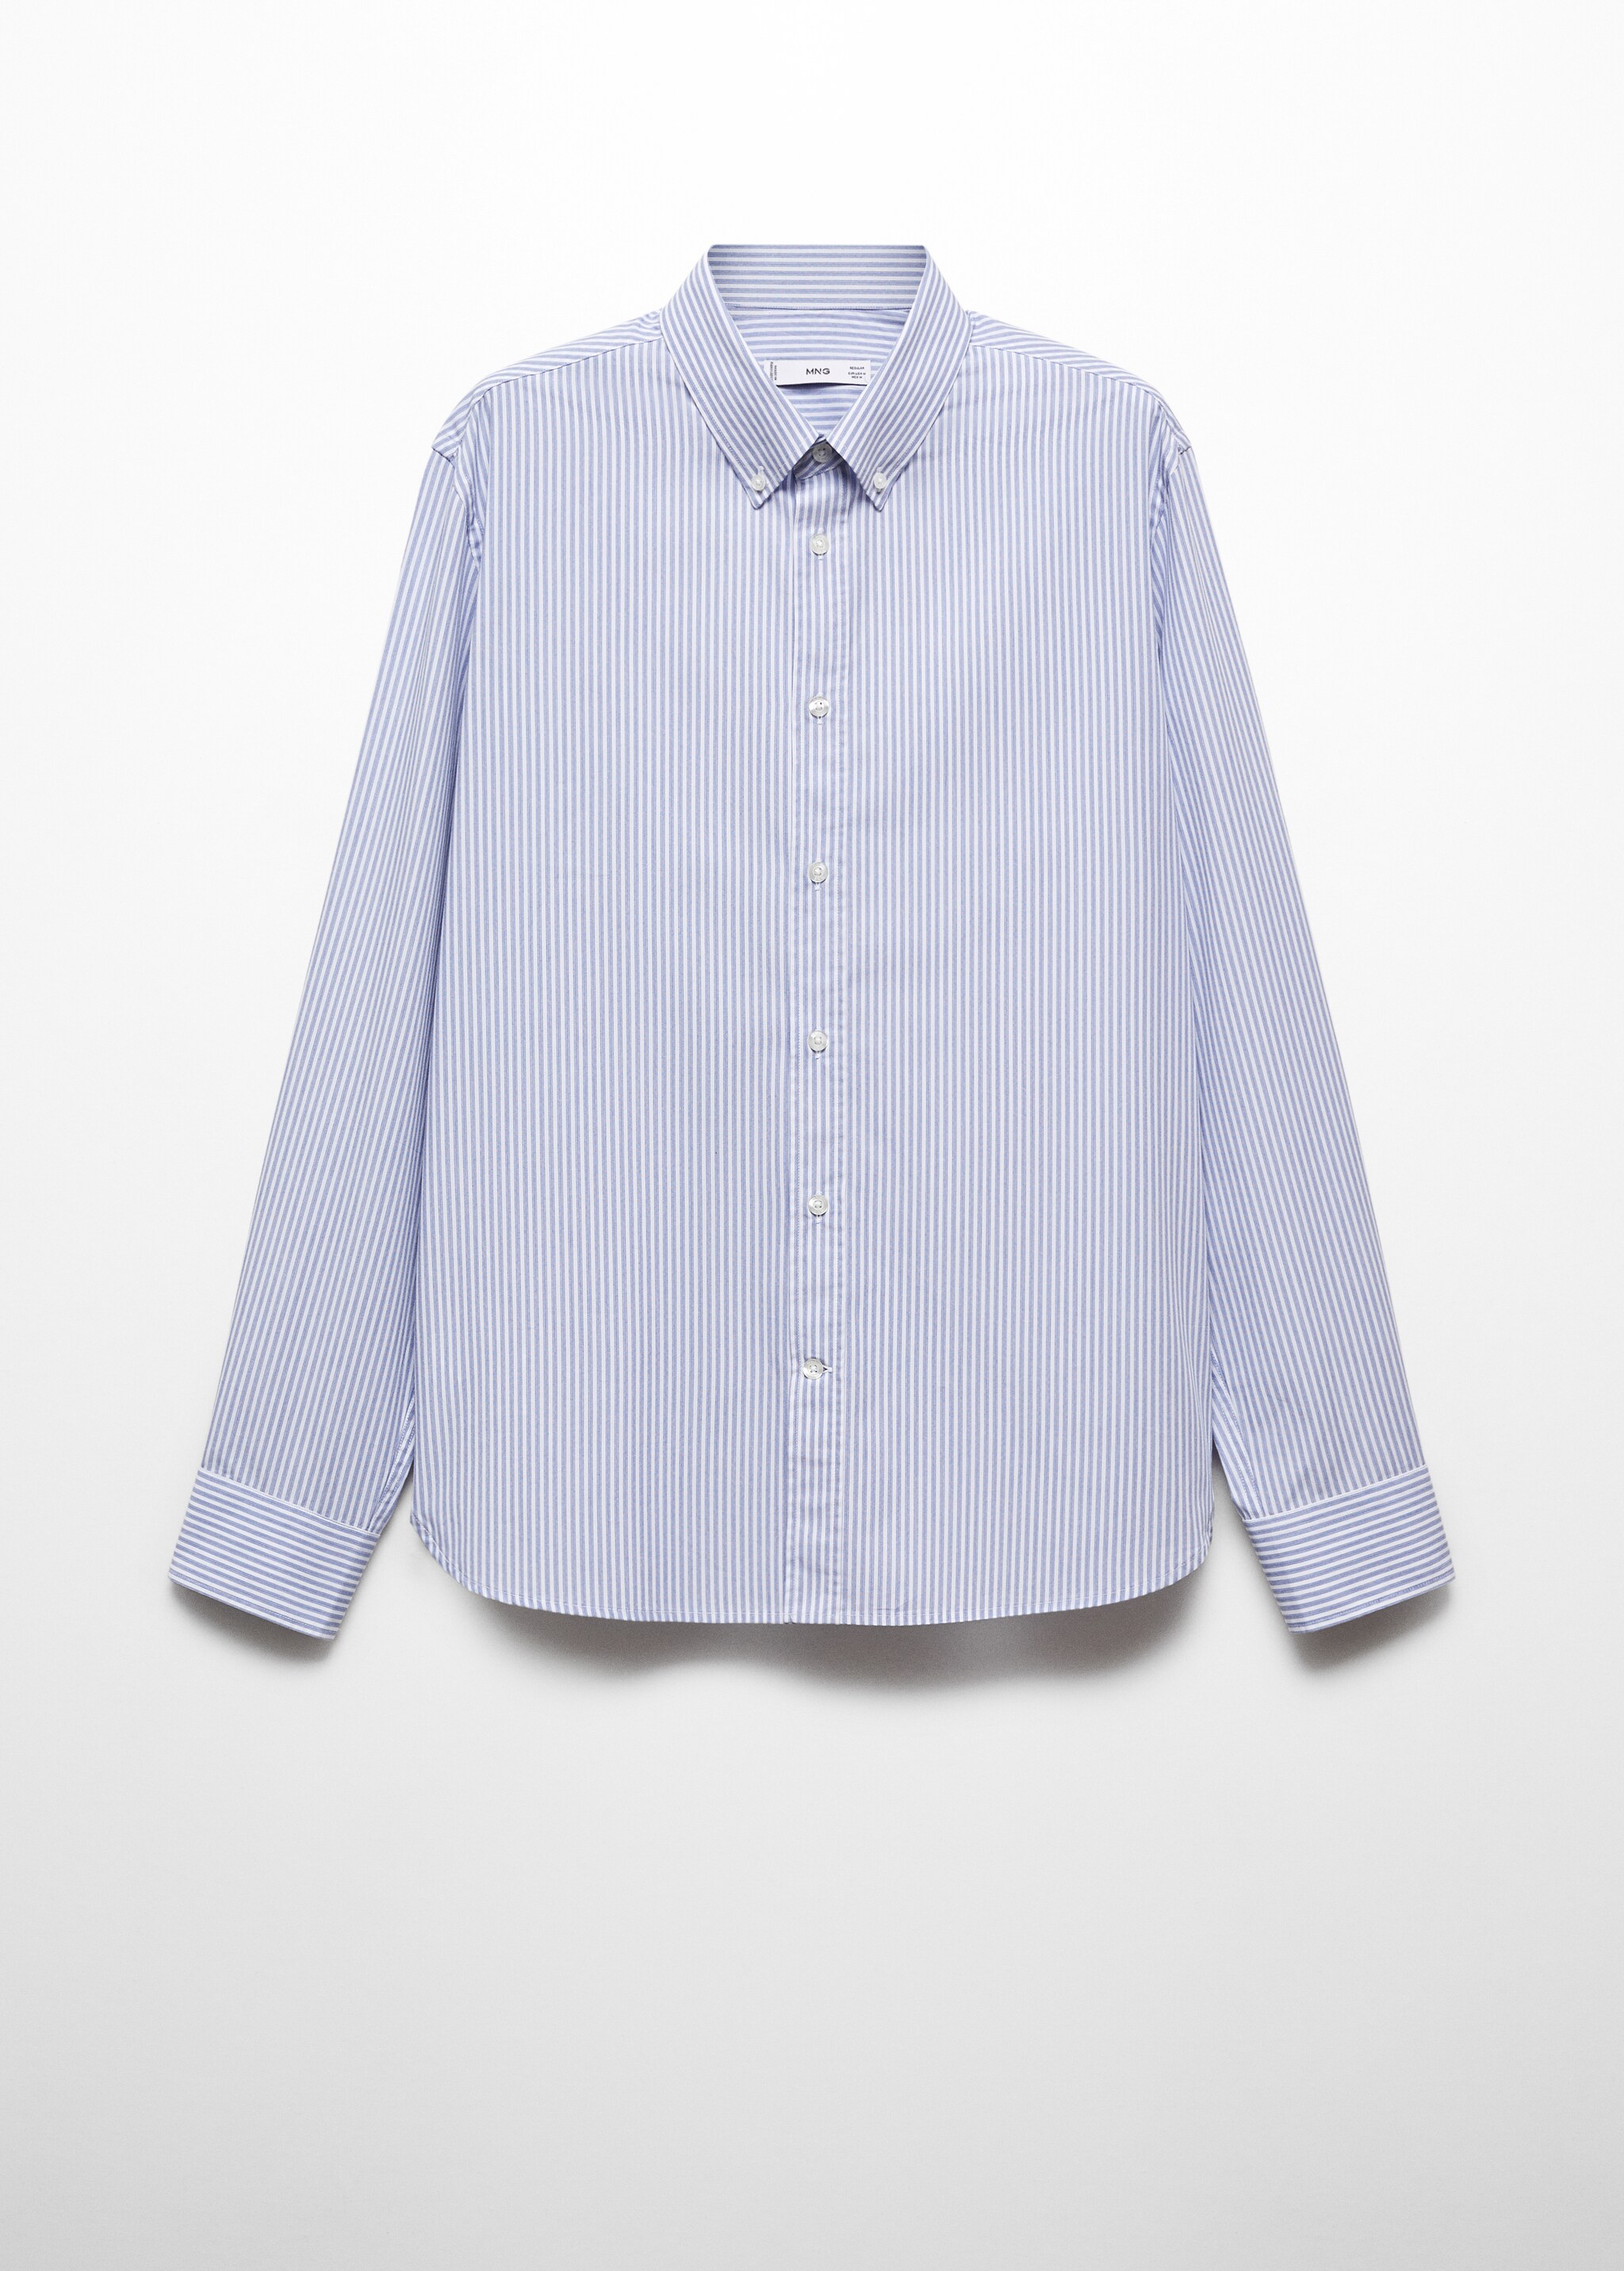 Camisa regular fit algodón rayas - Artículo sin modelo